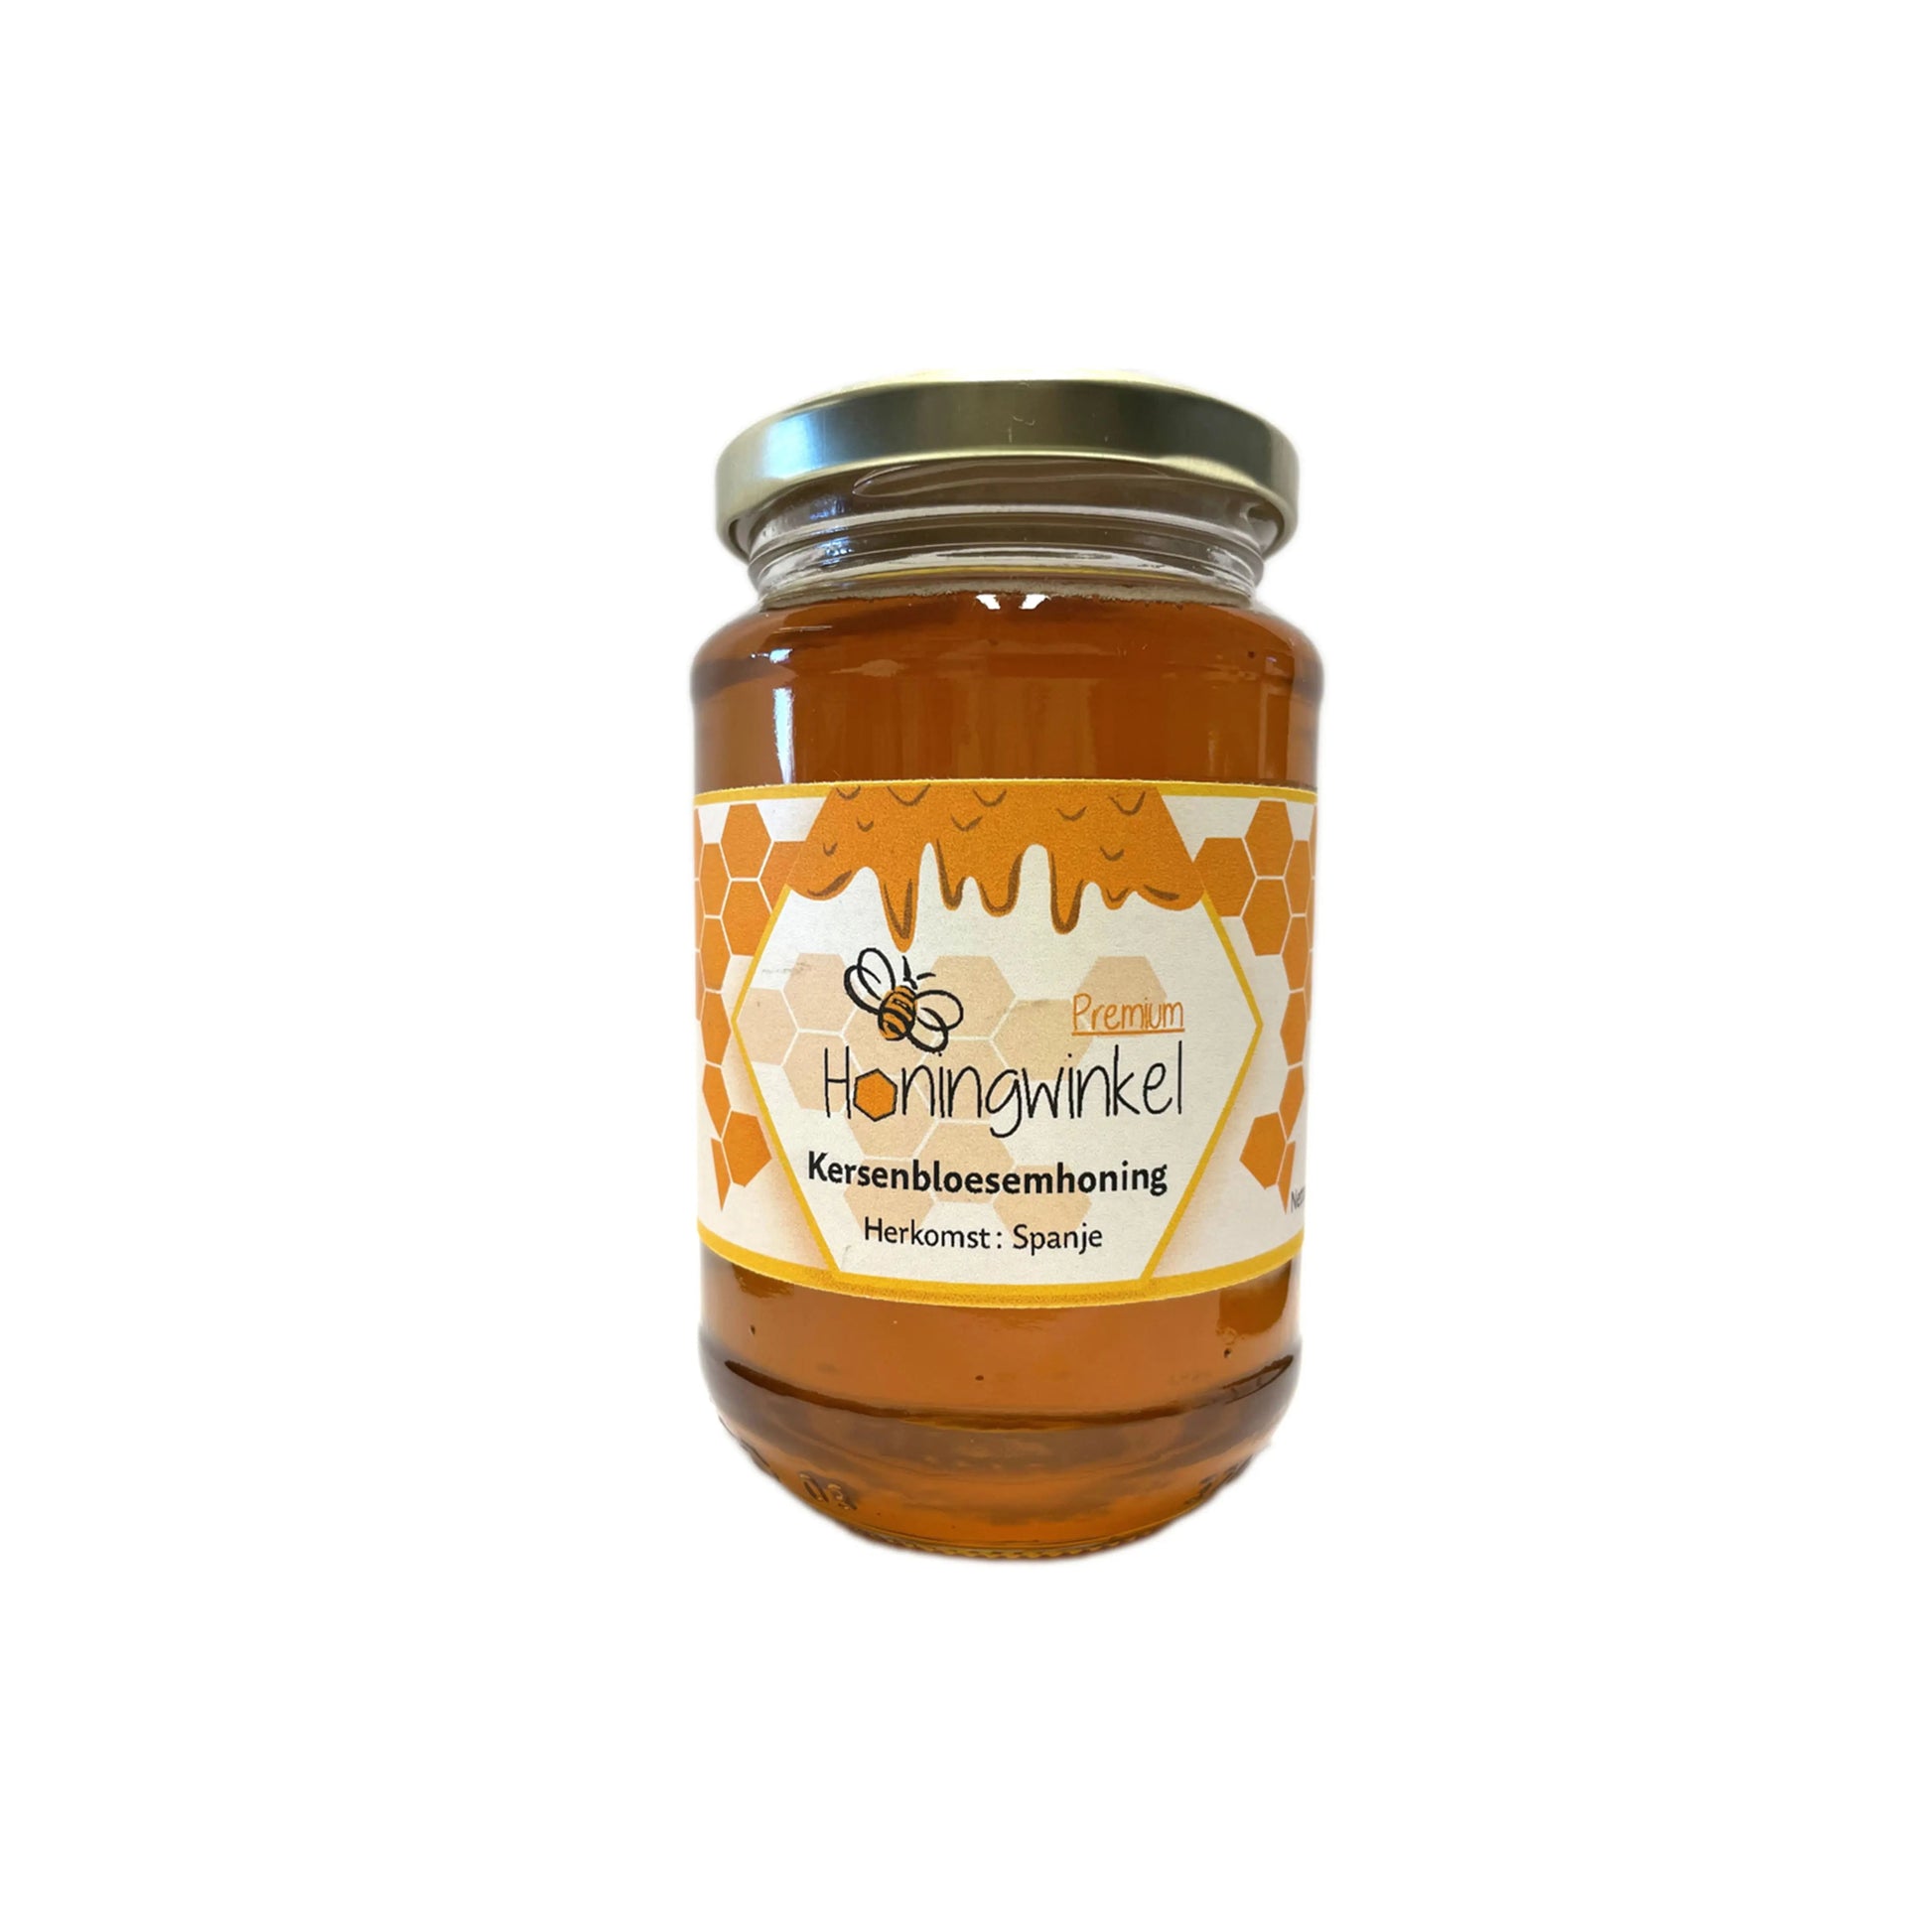 Premium kersenbloesemhoning Spanje 450g Honingwinkel (vloeibaar) - Honingwinkel